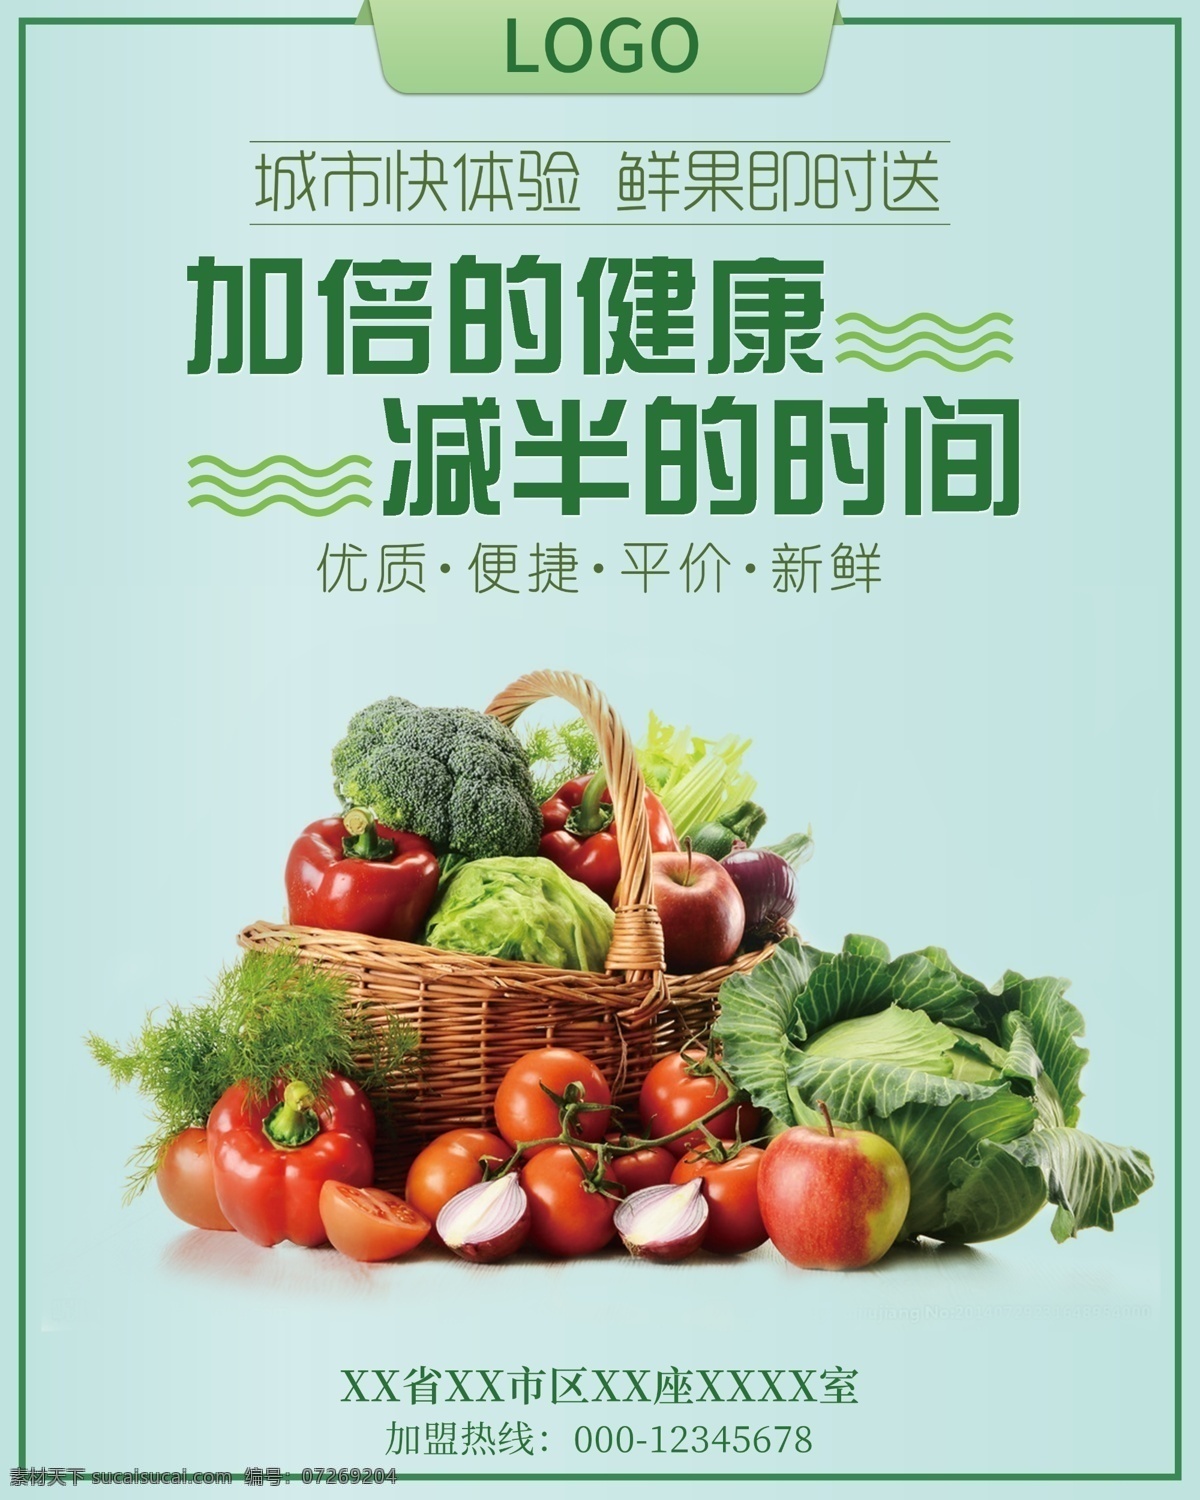 绿色 蔬菜水果 生鲜 宣传海报 超市